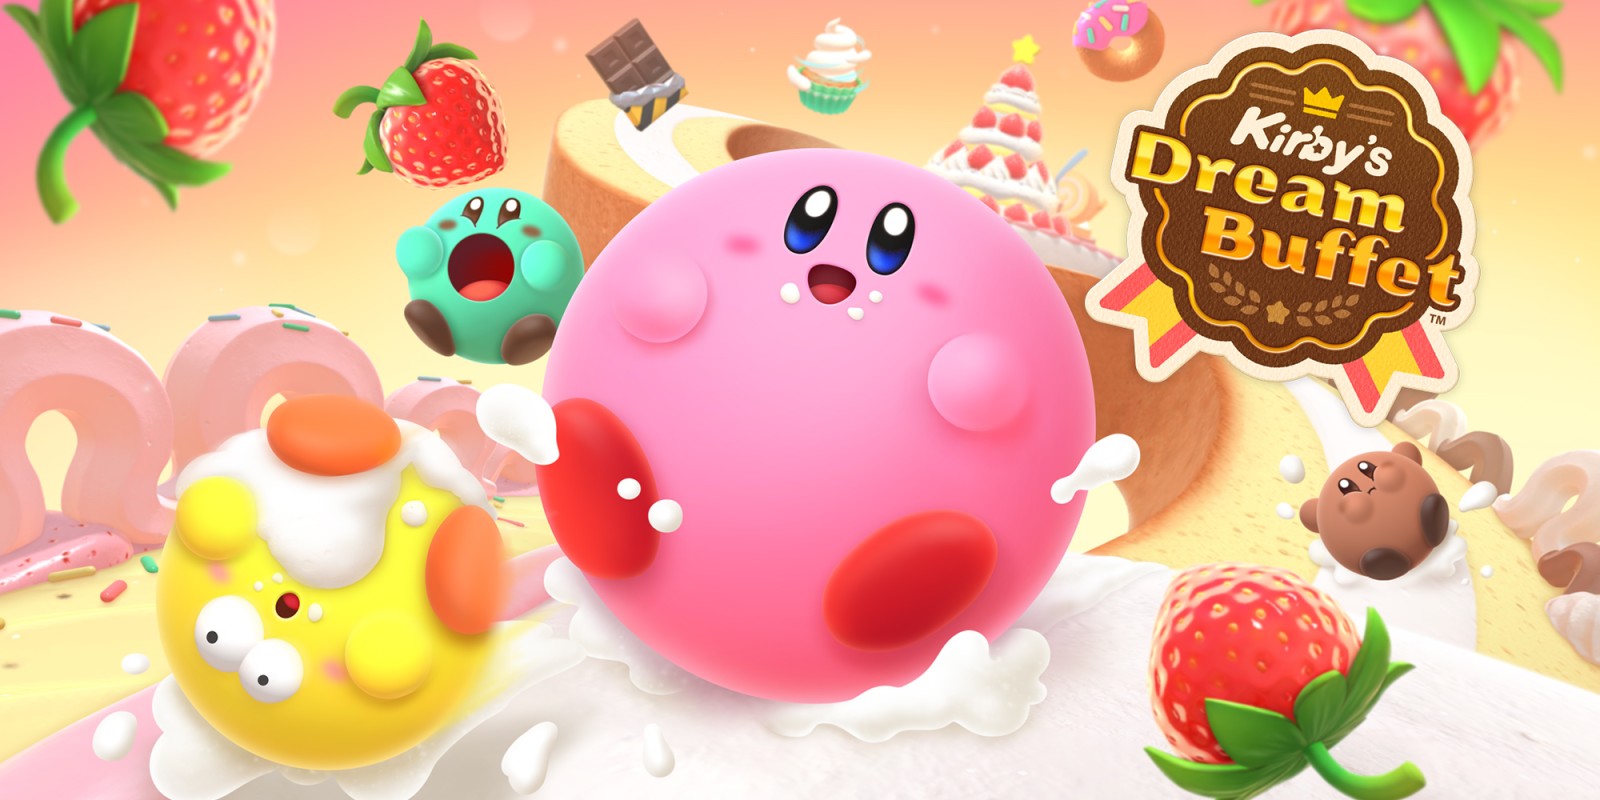 Ogłoszenie Kirby's Dream Buffet - konkurencyjnej arkady o jedzeniu smakołyków